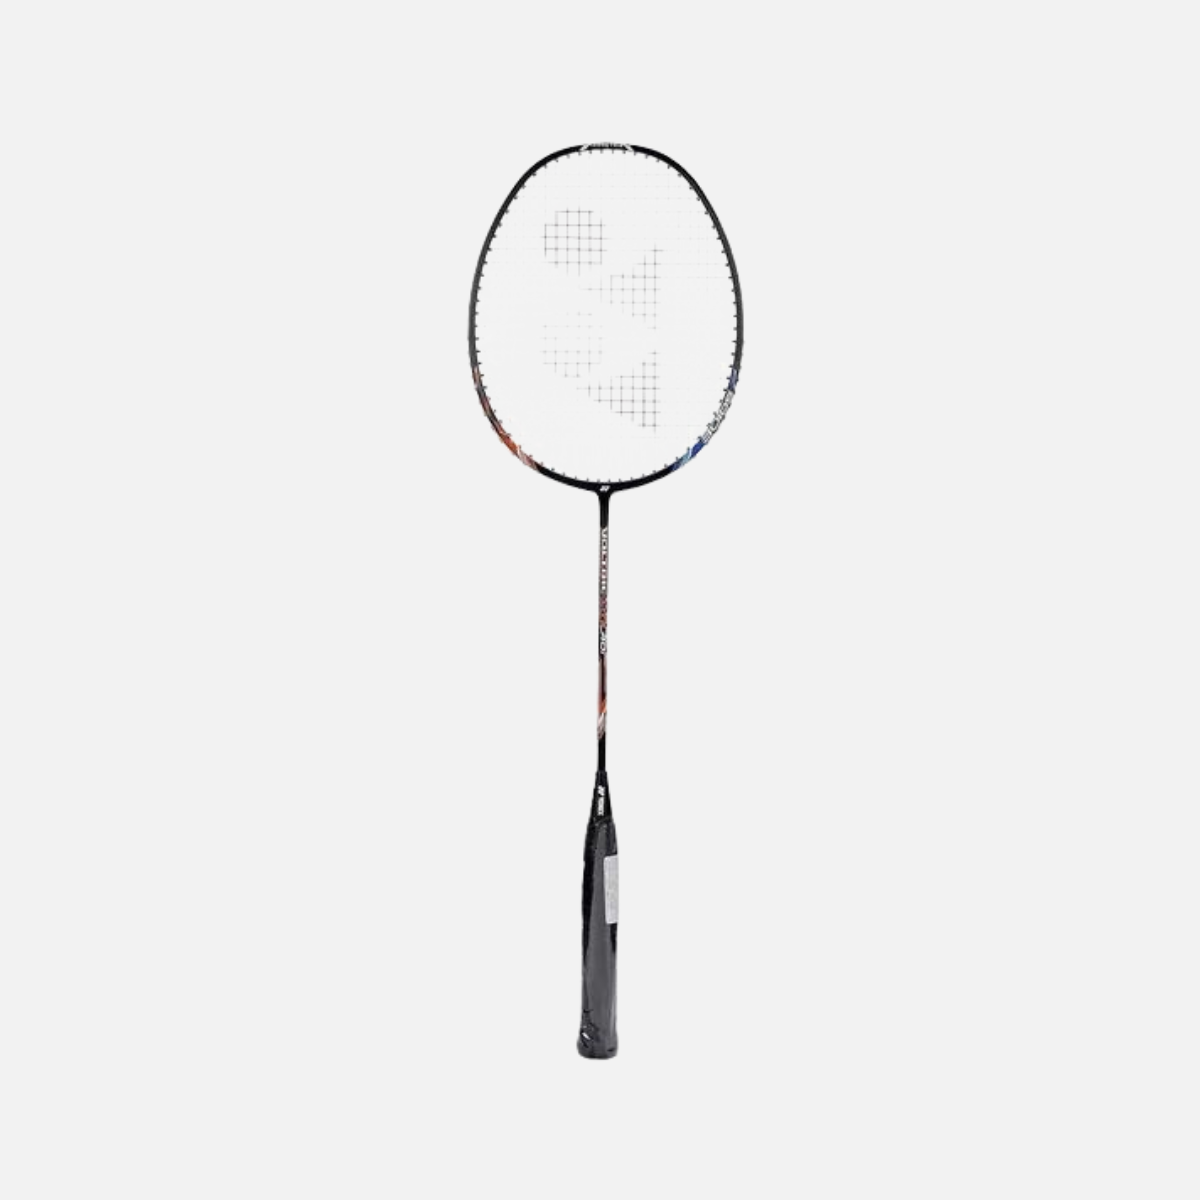 Yonex Voltric Lite 40i Badminton Racquet -Blue/Orange